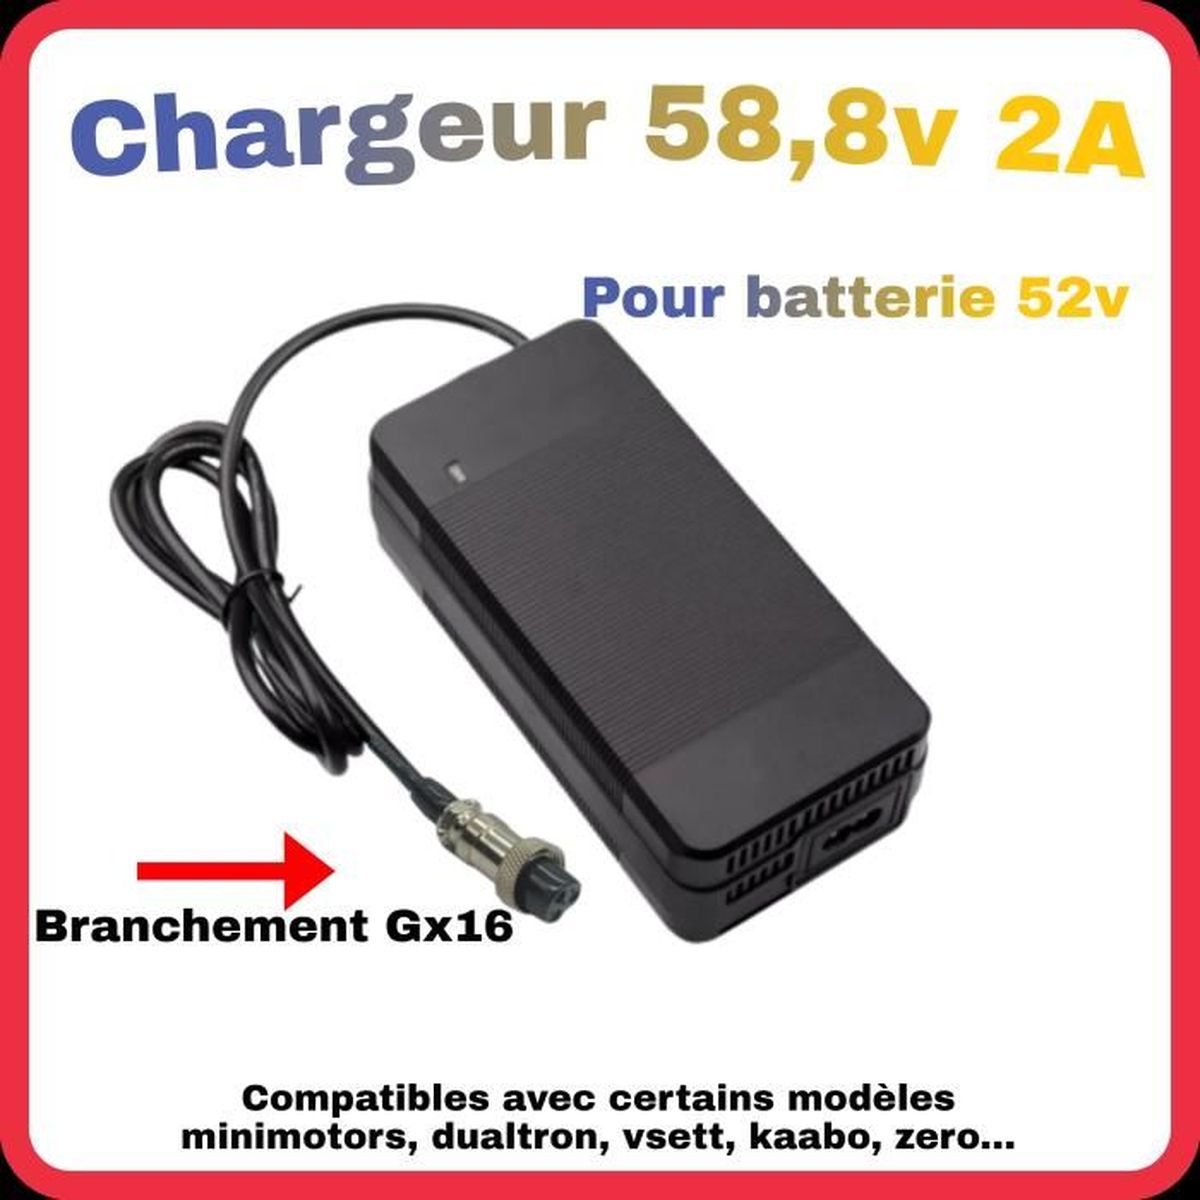 Chargeur 54,6v 3A pour batterie 48v chargeur rapide GX16 trottinette électrique 